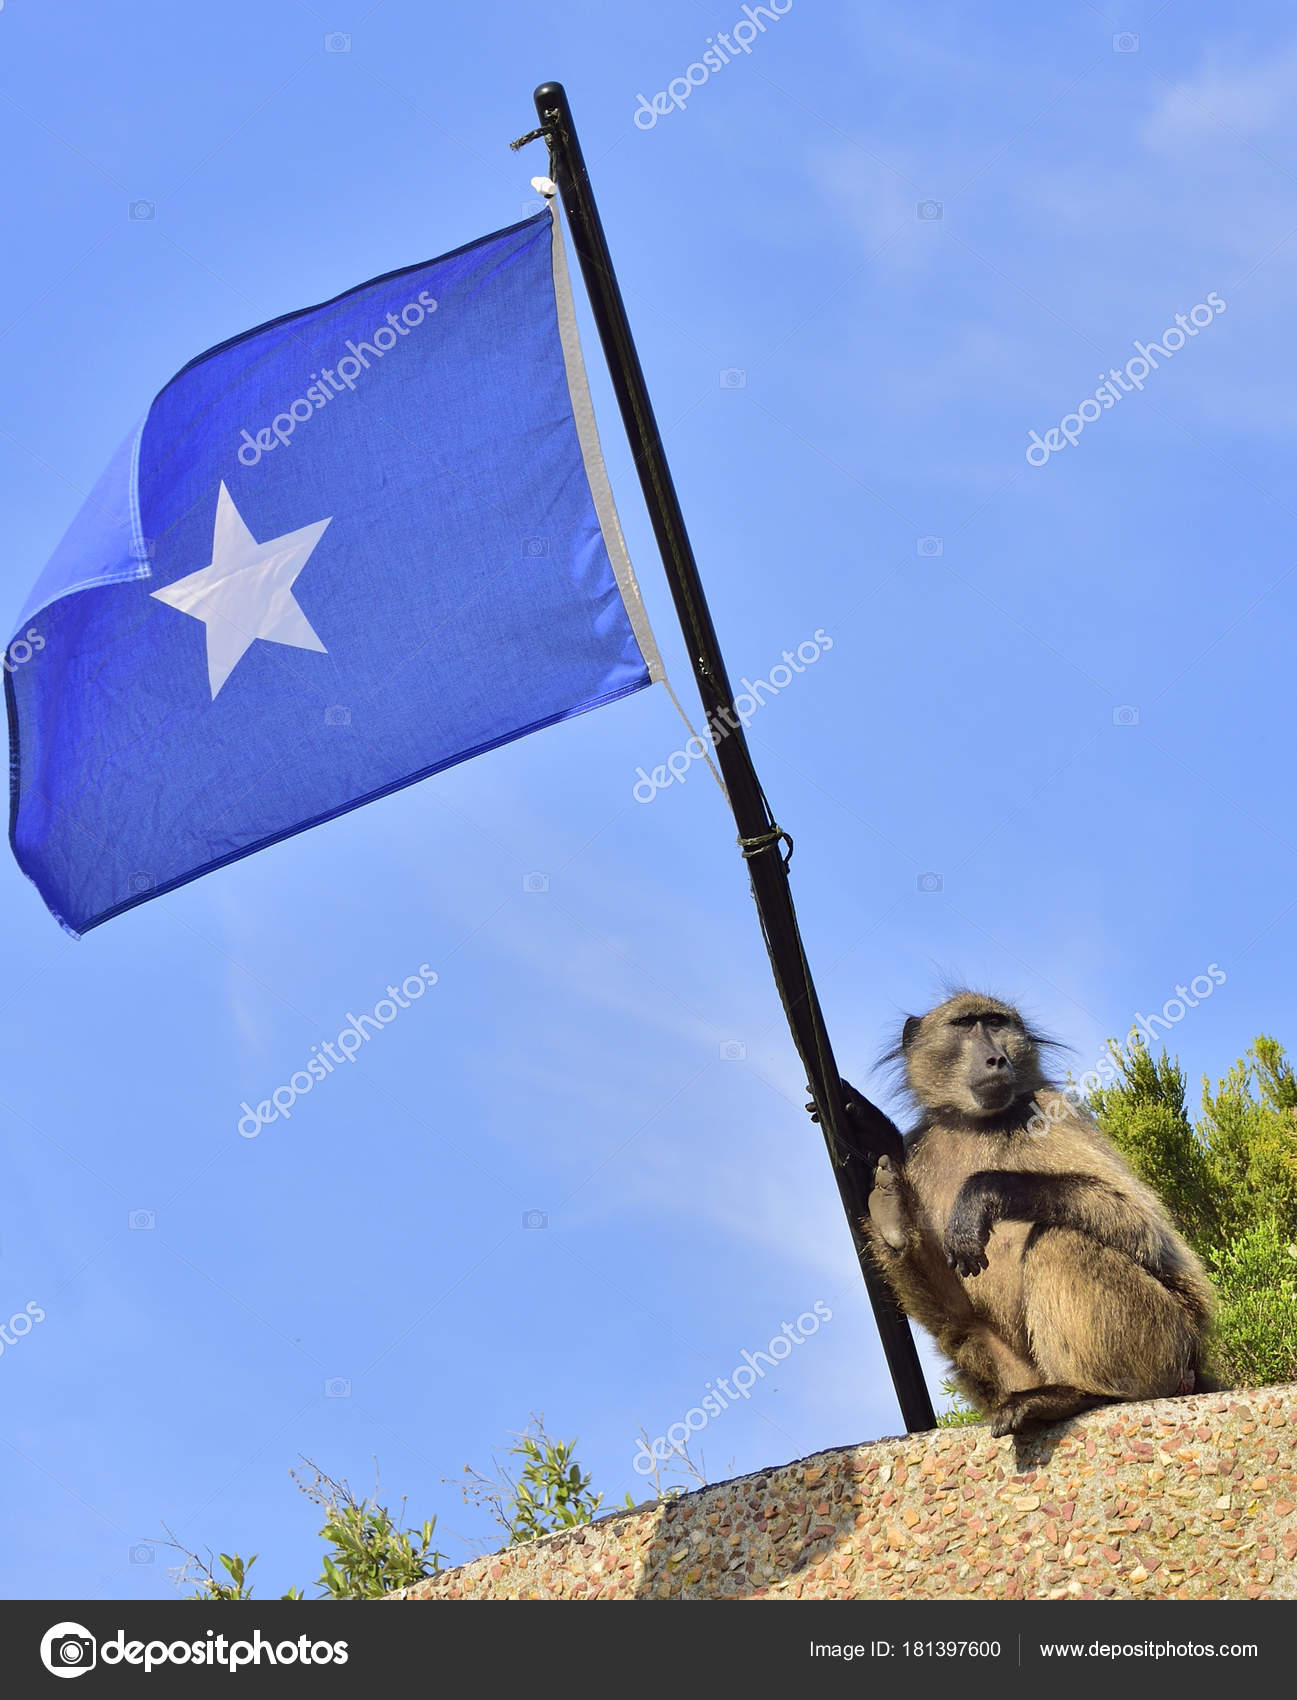 depositphotos_181397600-stock-photo-baboon-somali-flag-blue-sky.jpg